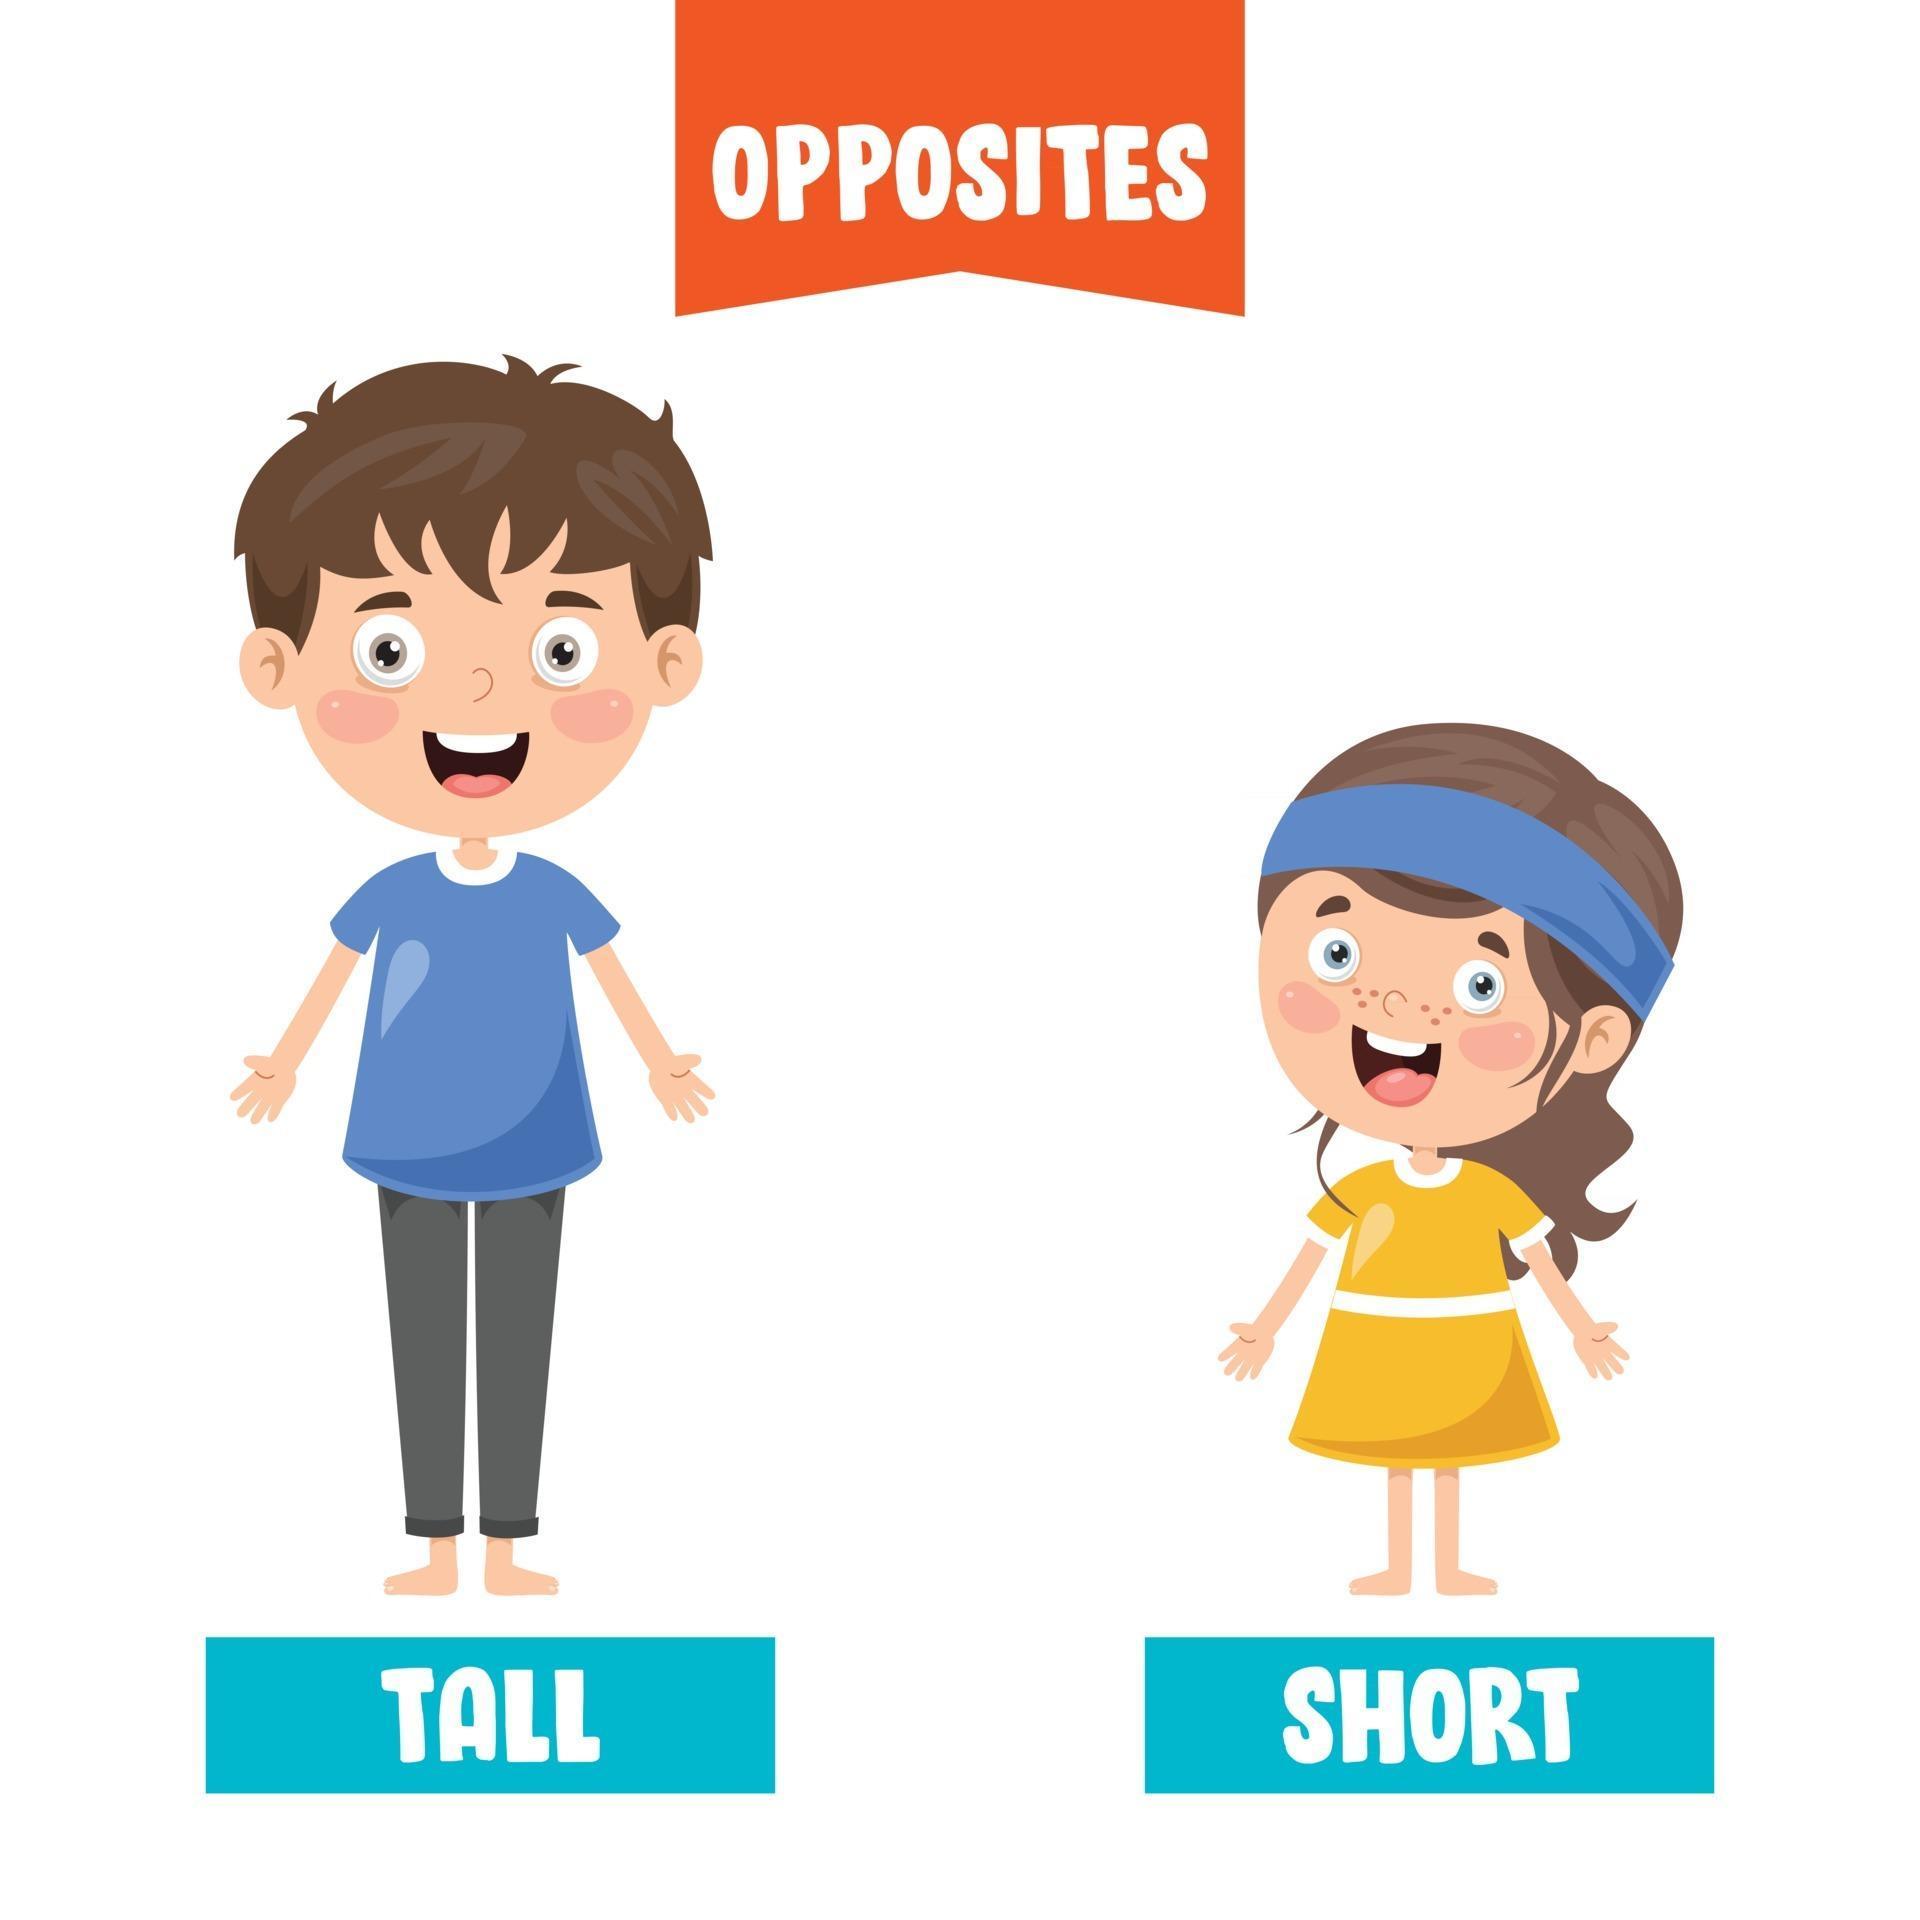 Opposites short. Long short opposites. Opposites картинки для детей. Long short картинка для детей. Opposite картинка.